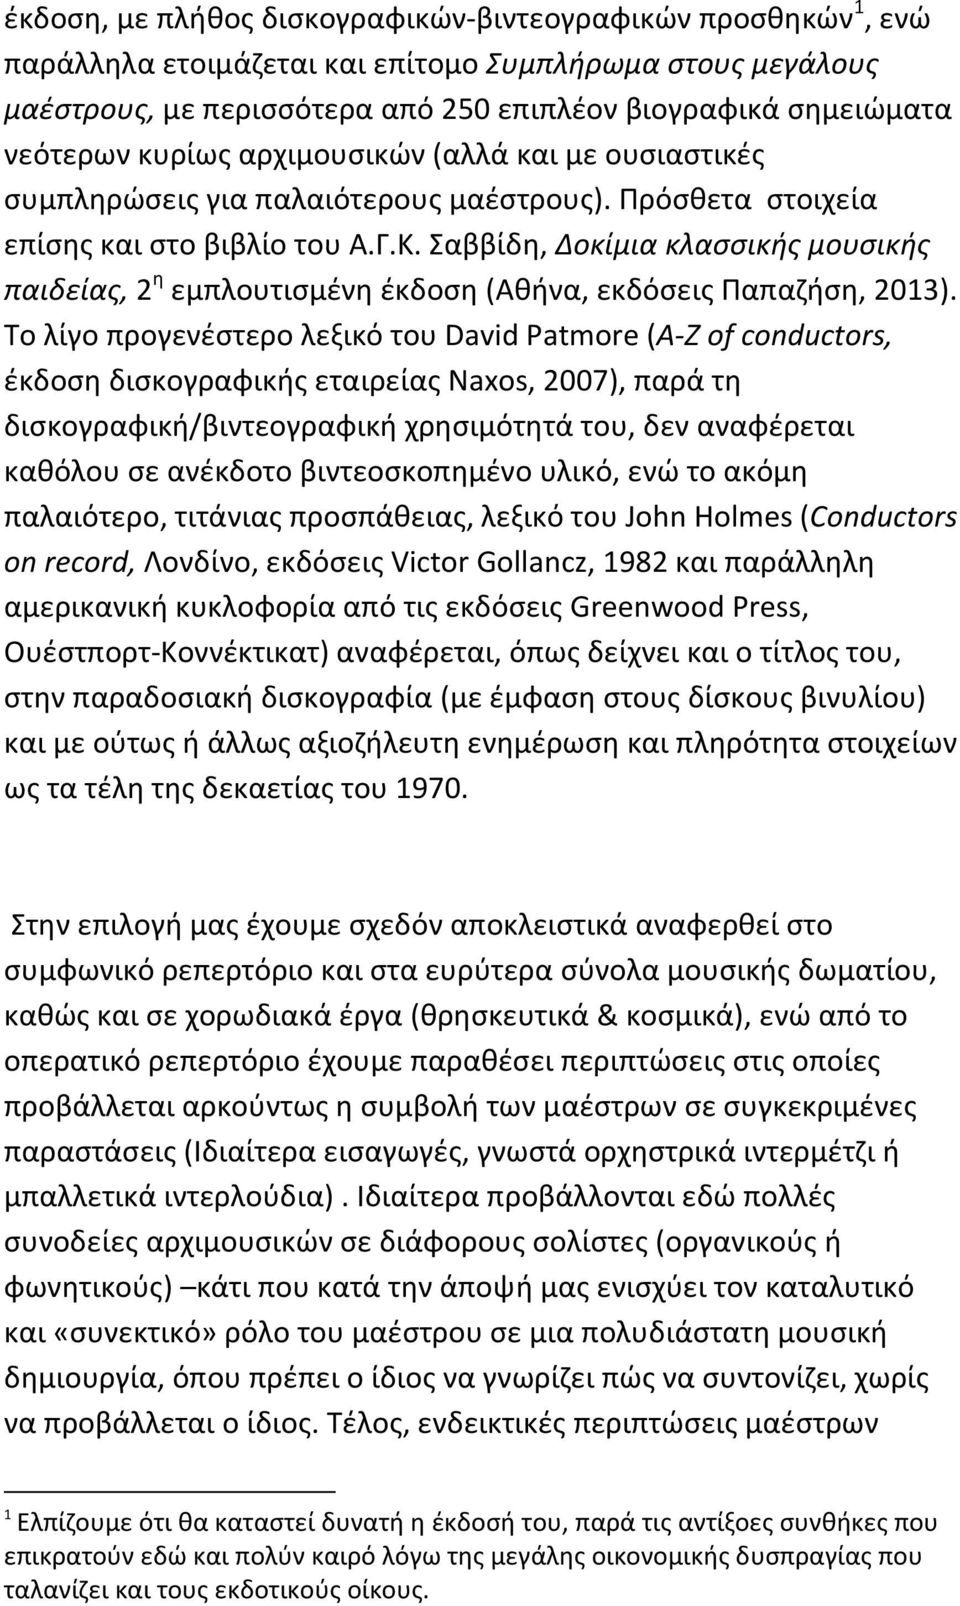 Σαββίδη, Δοκίμια κλασσικής μουσικής παιδείας, 2 η εμπλουτισμένη έκδοση (Αθήνα, εκδόσεις Παπαζήση, 2013).